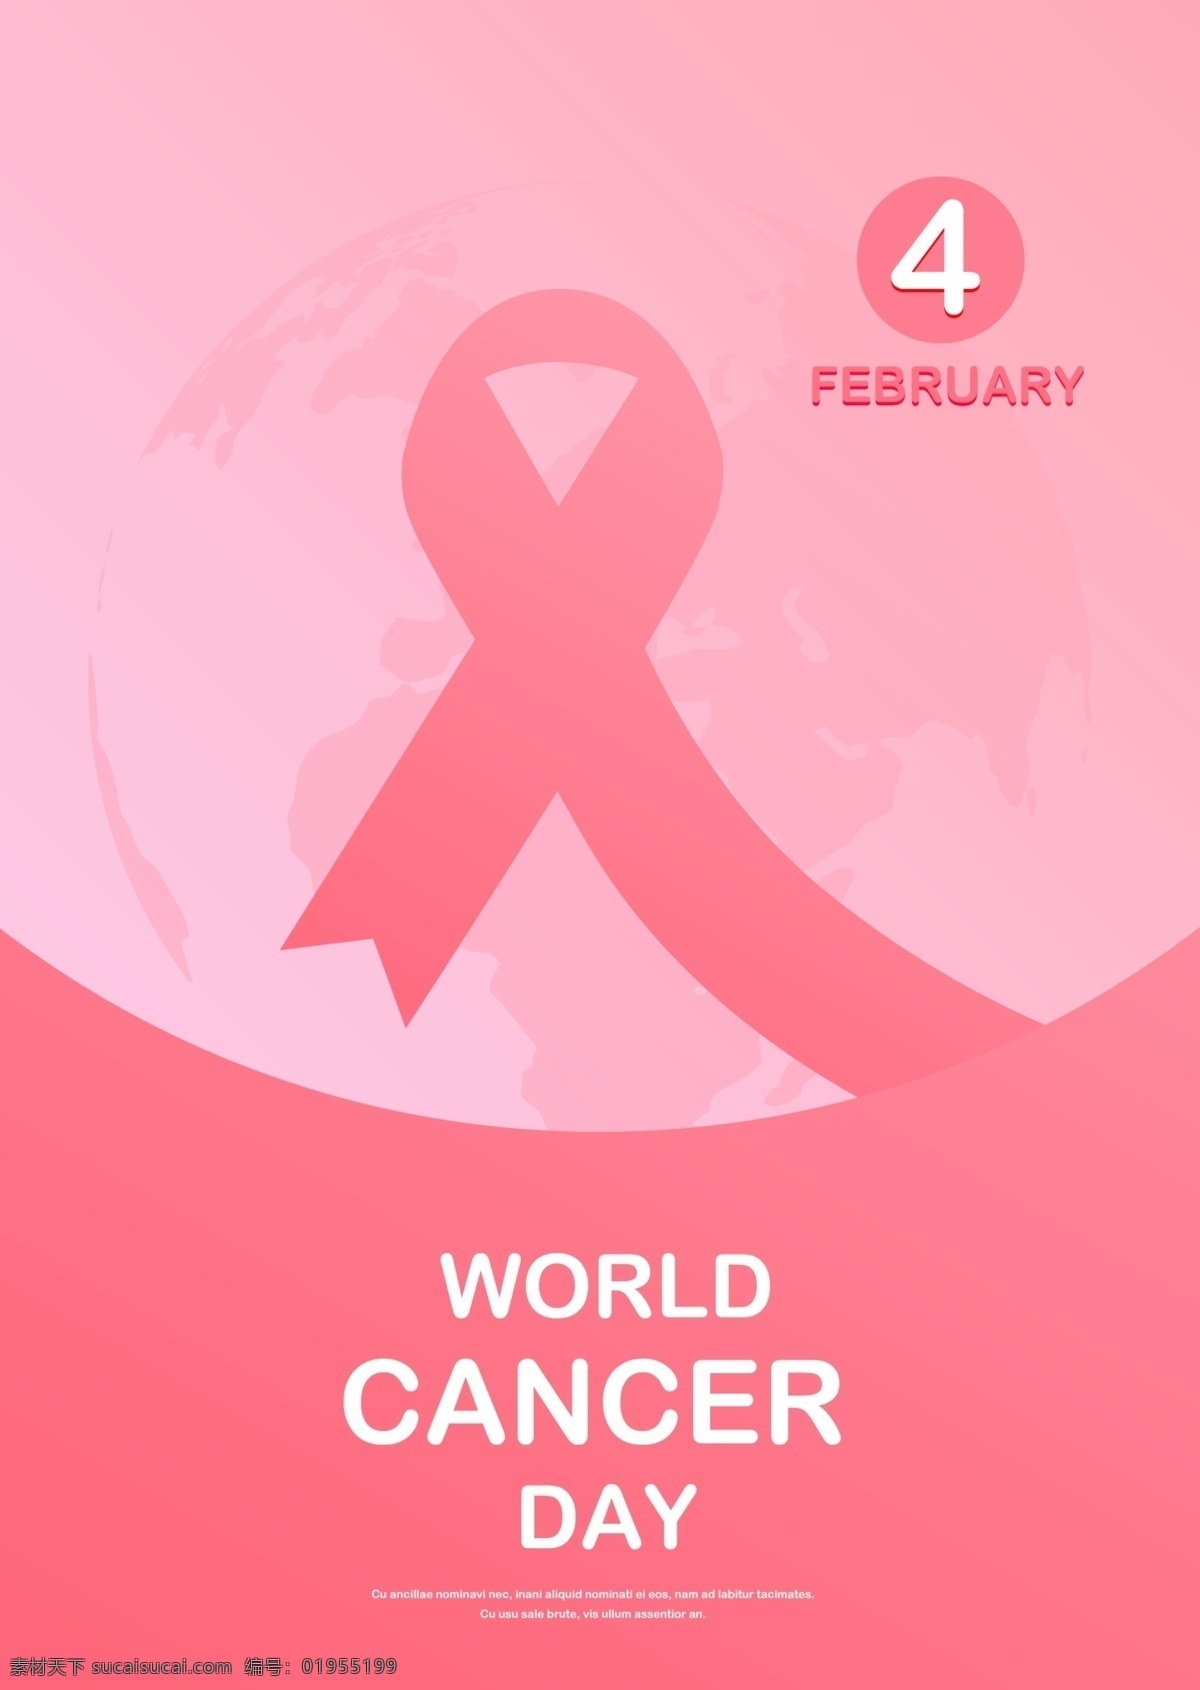 世界 癌症 日 简单 弧 粉红 丝带 海报 模板 2月4日 公益事业 半圆 宣传 舒适 现代 疾病 癌症宣传 预防癌症 粉红丝带 粉 红色 圆弧 精简 世界地图